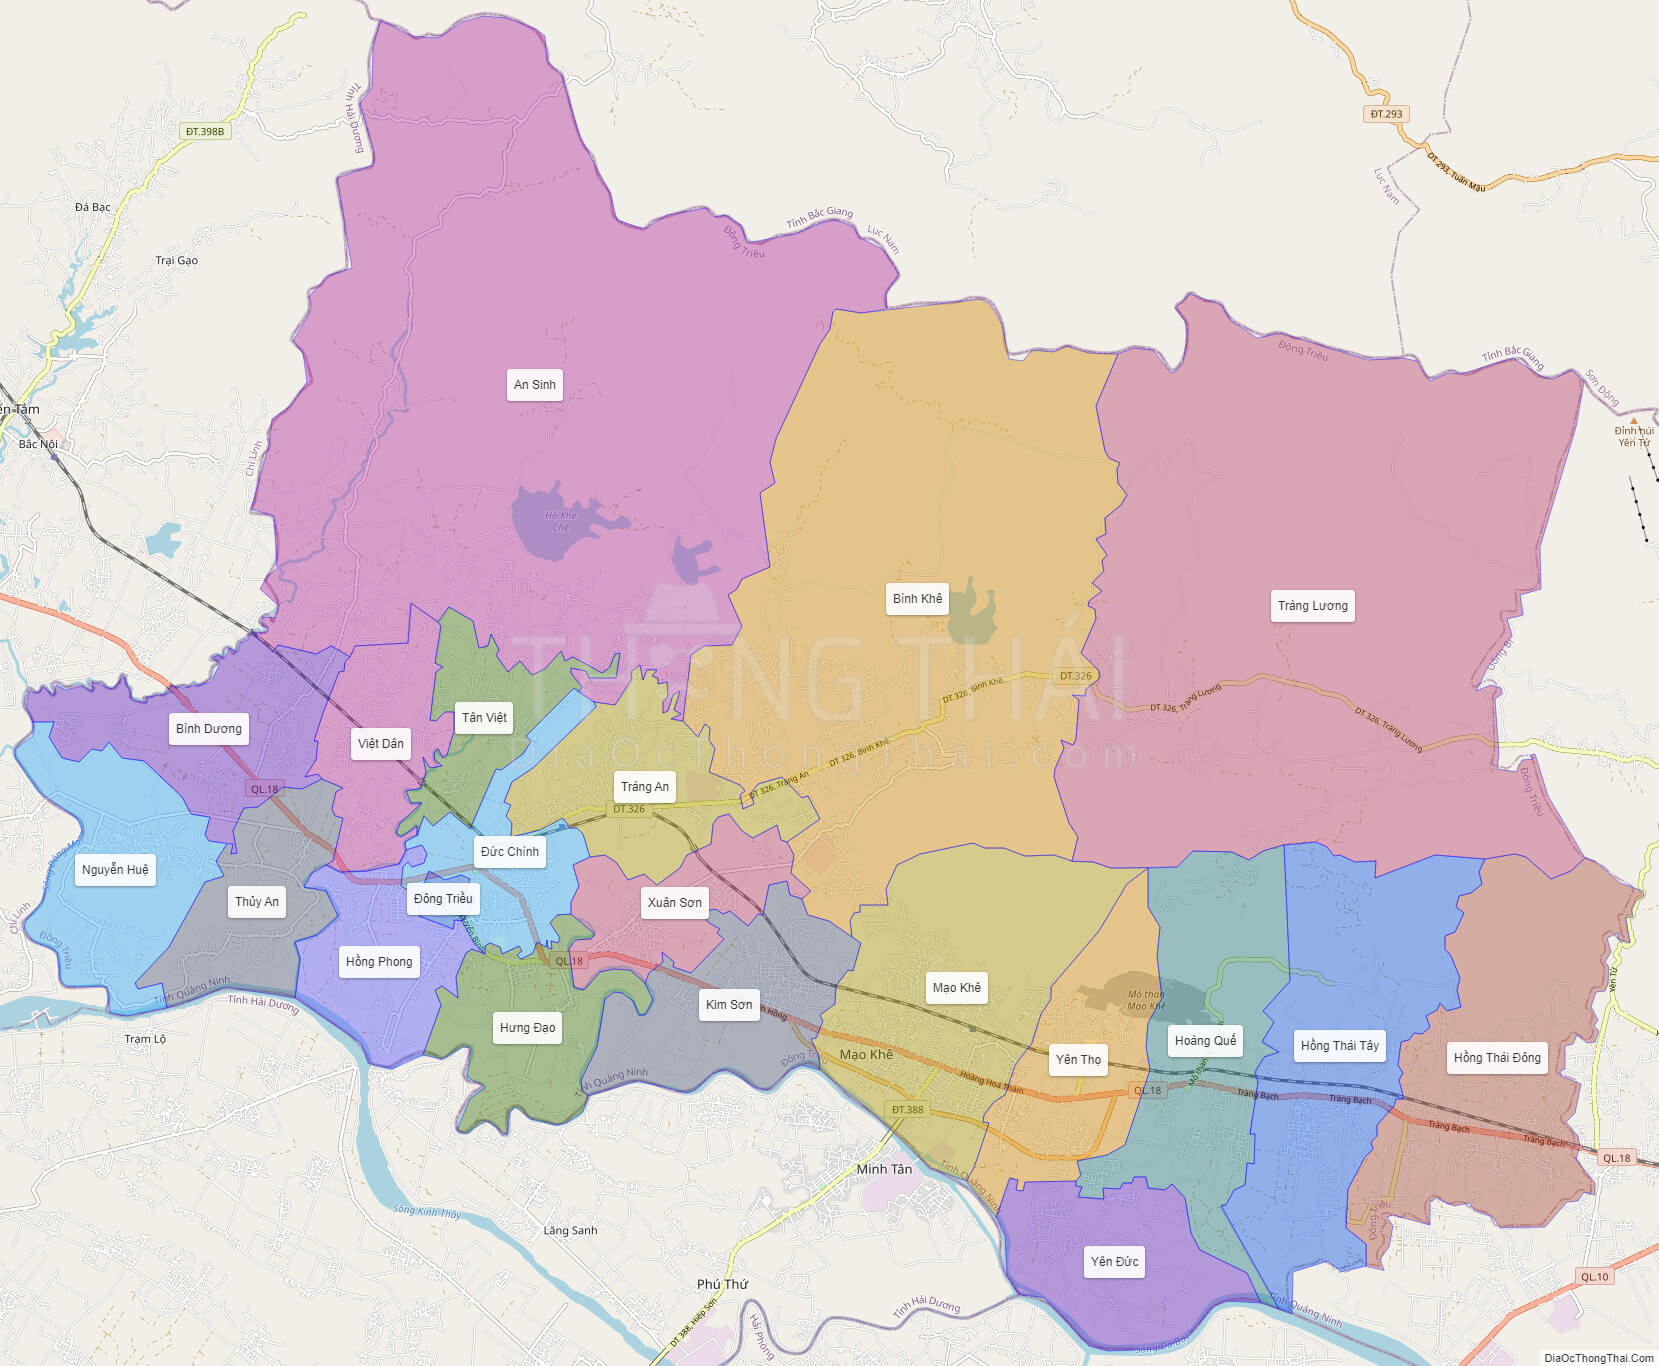 Khám phá nét đẹp văn hóa, lịch sử của Thị xã Đông Triều thông qua bản đồ hành chính thích hợp nhất. Cập nhật mới nhất về quy hoạch đô thị và phát triển kinh tế của khu vực, hãy đến và khám phá ngay sau khi xem hình ảnh liên quan đến keyword này.